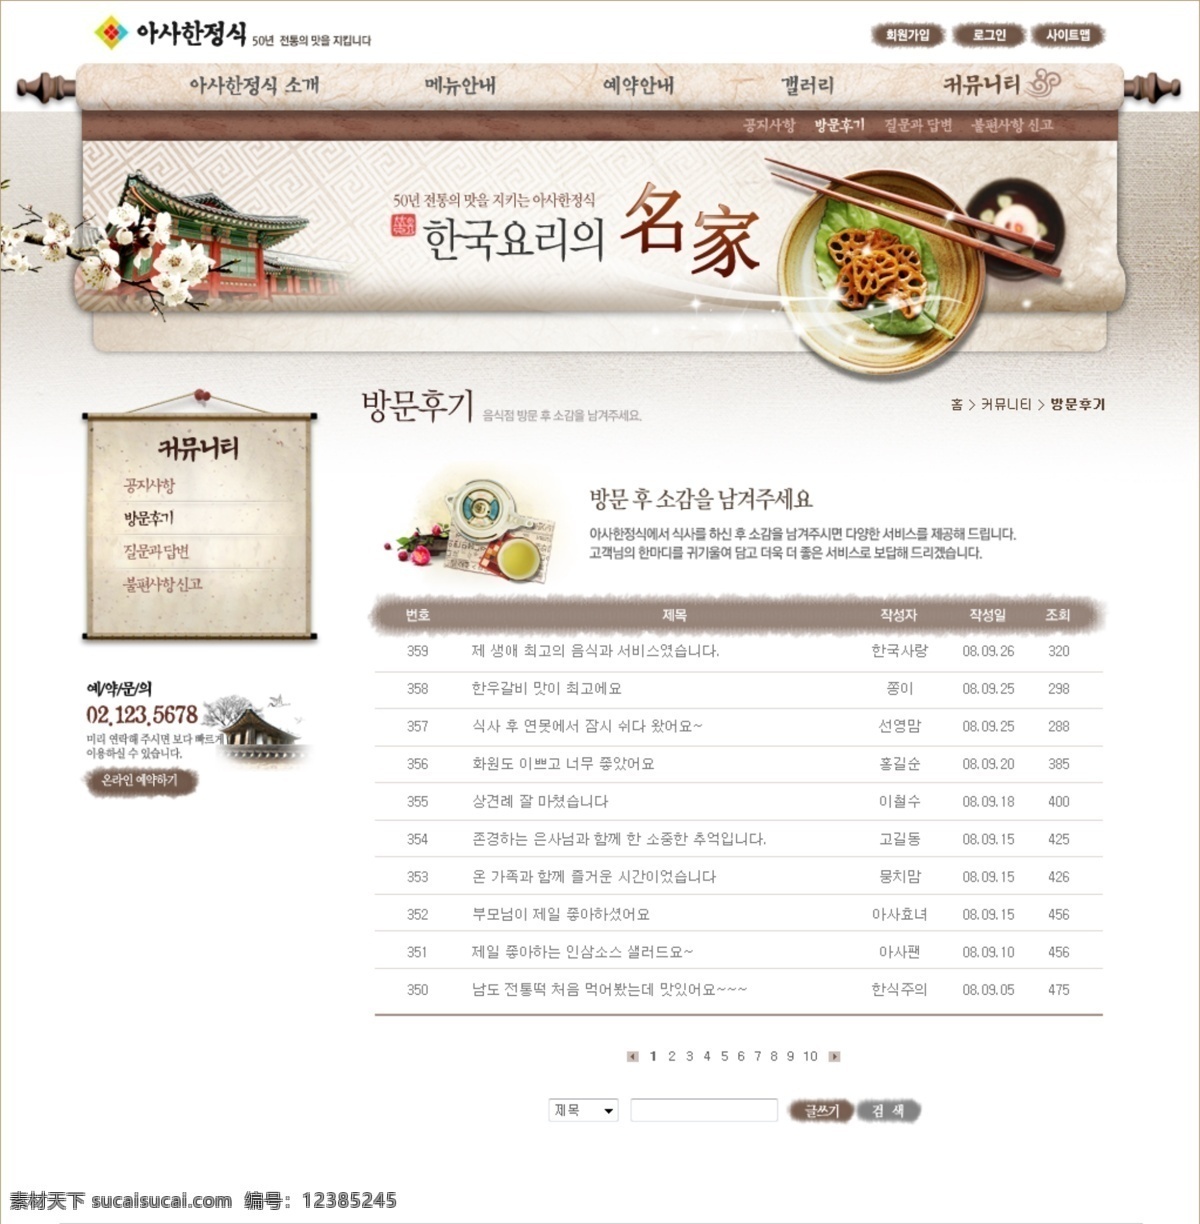 韩国 菜谱 网页设计 菜单 古代建筑 古朴 精致 名家 碗筷 唯美 网页素材 网页模板